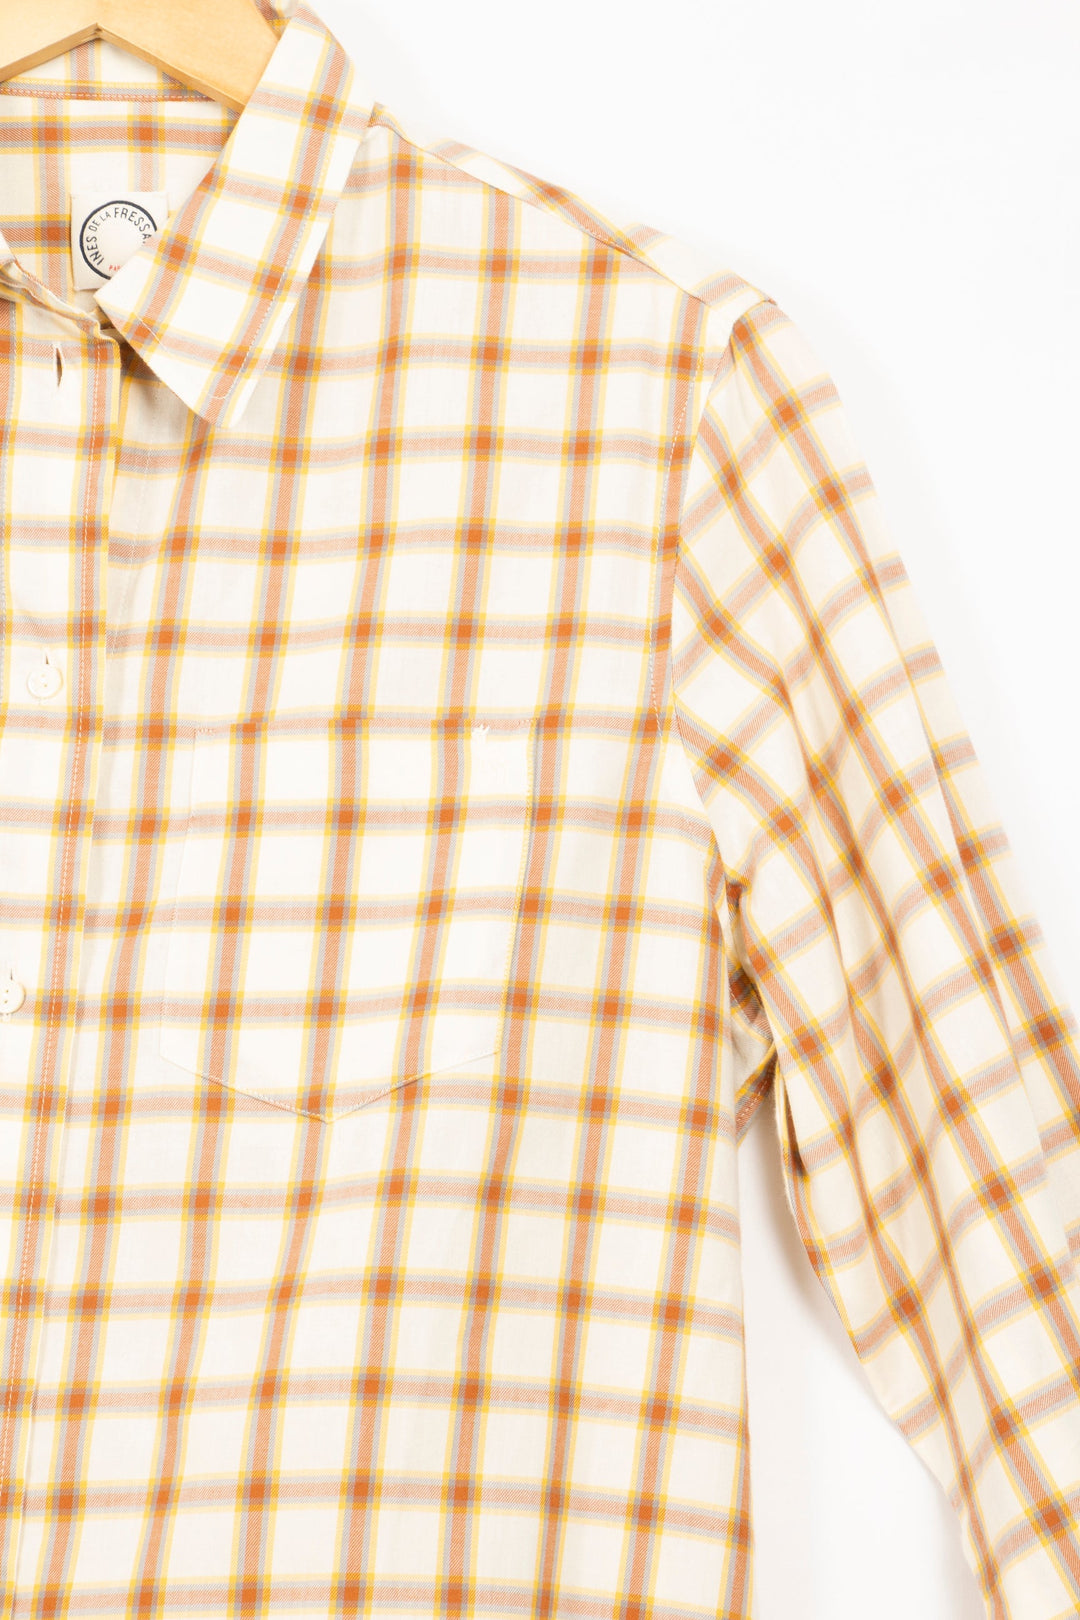 Beiges Hemd mit braunen Karos – 36